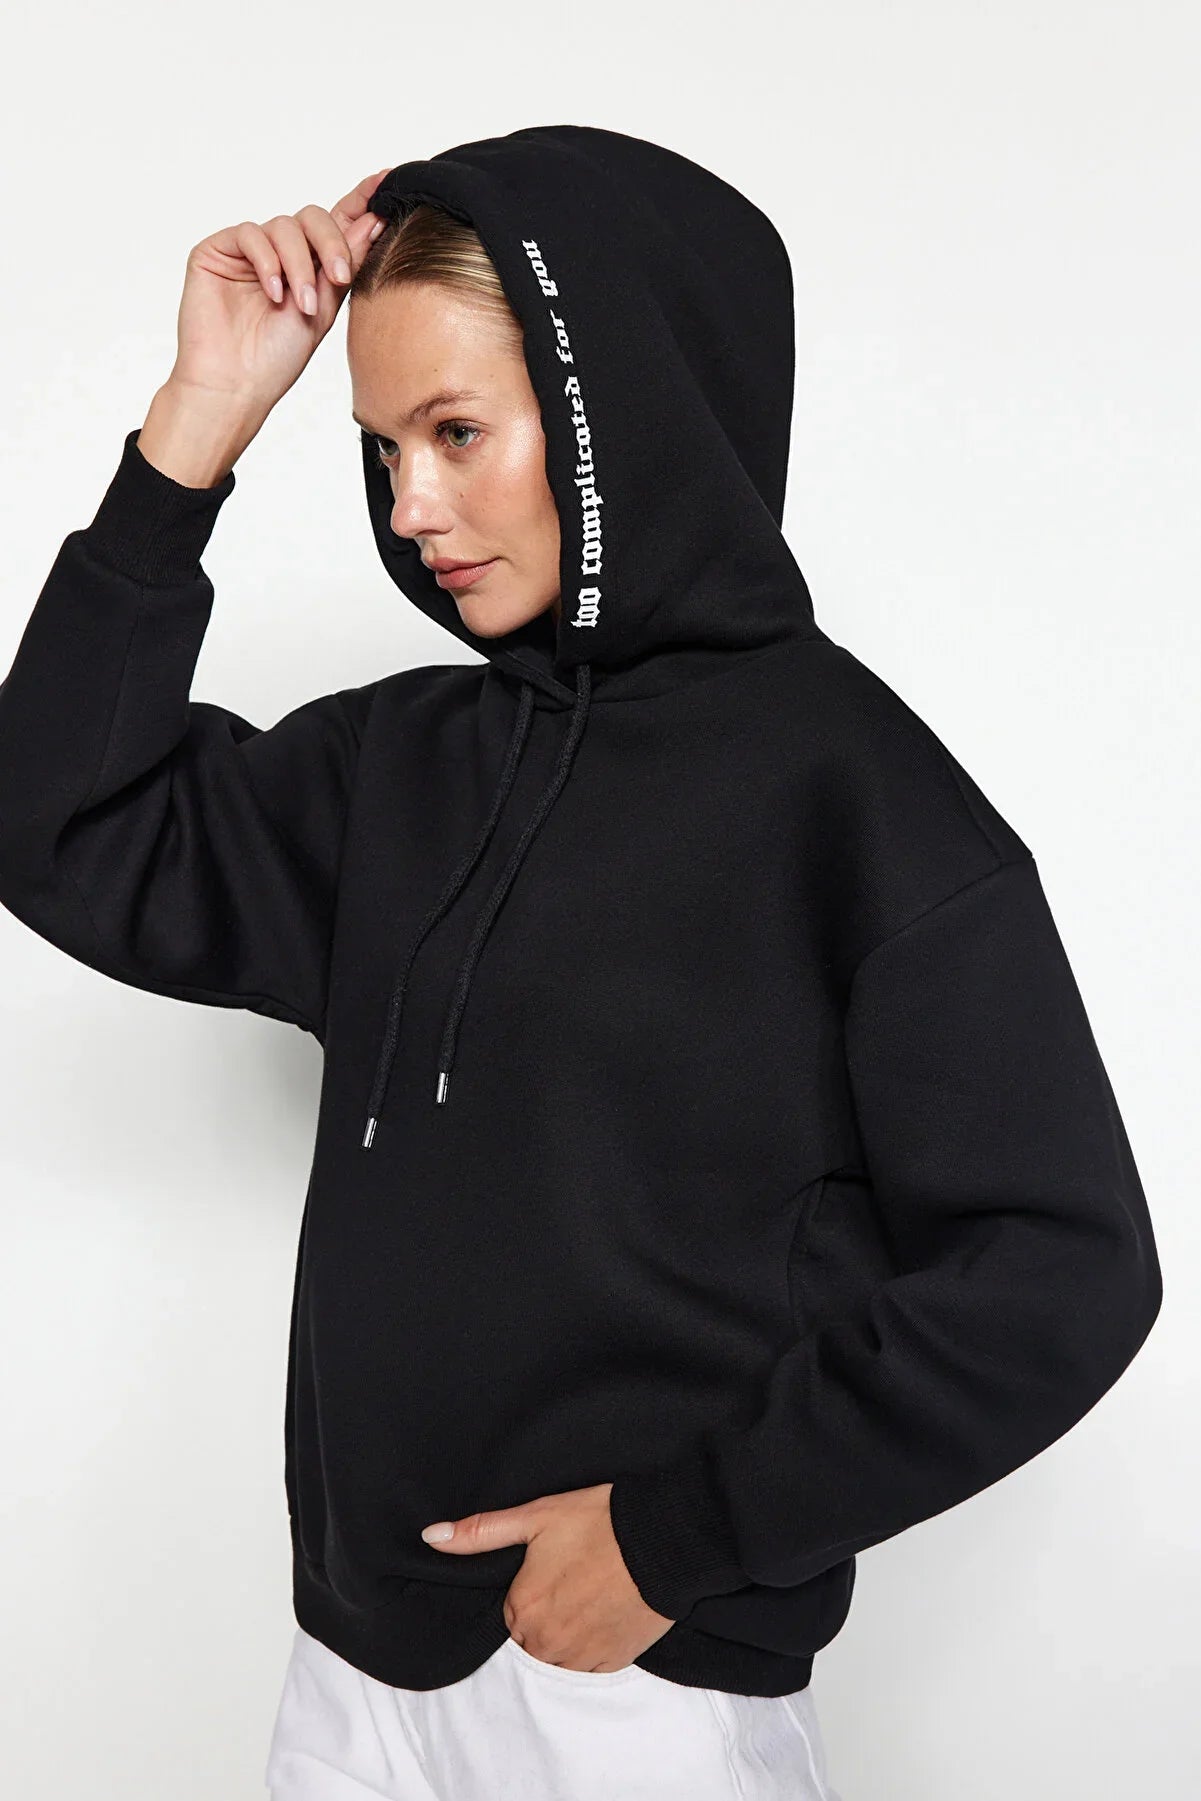 Nike Sportswear Essential Fleece Women's Black Sweatpants - Trendyol